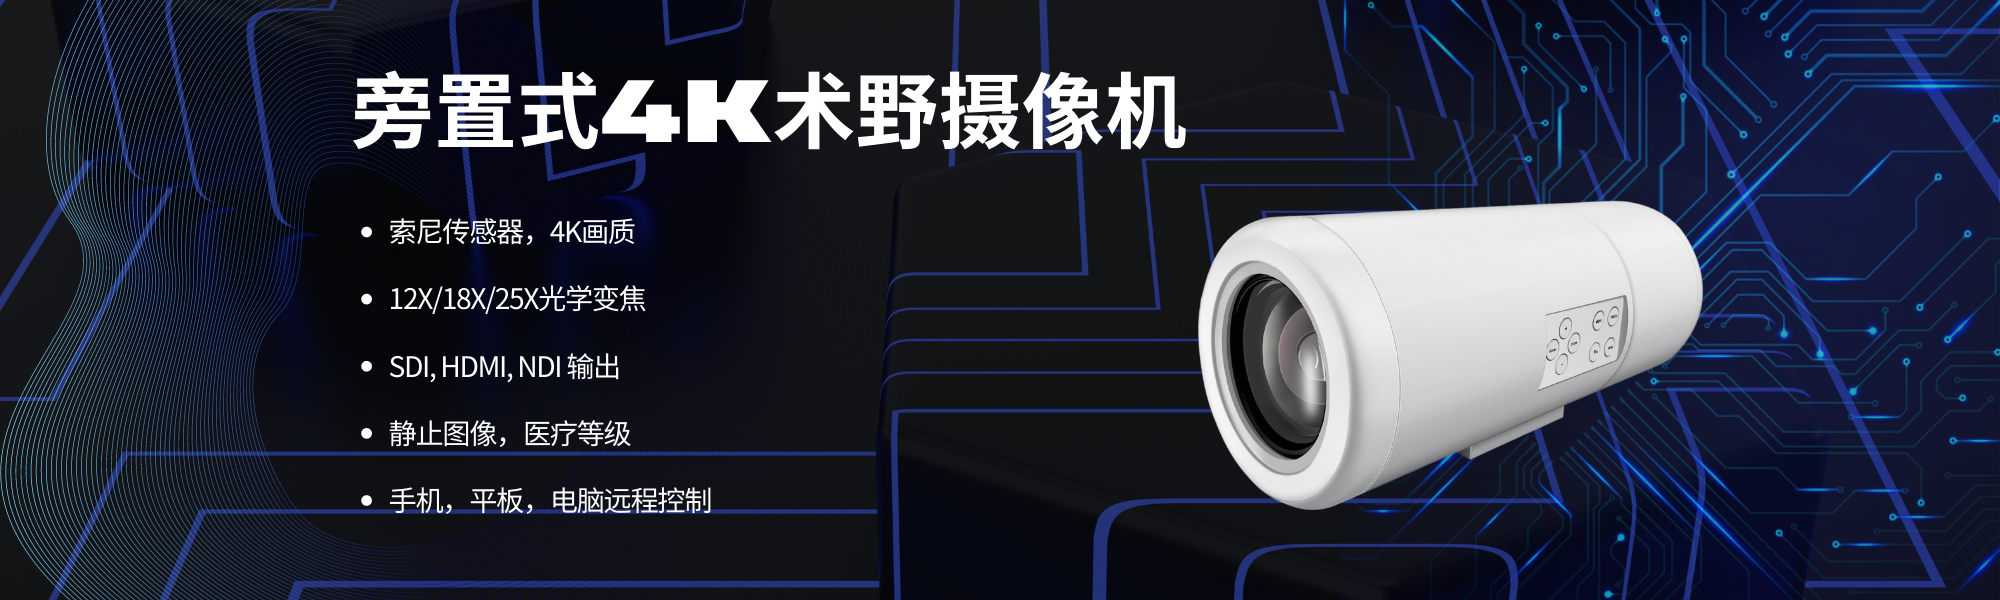 4K NDI旁置式术野摄像机